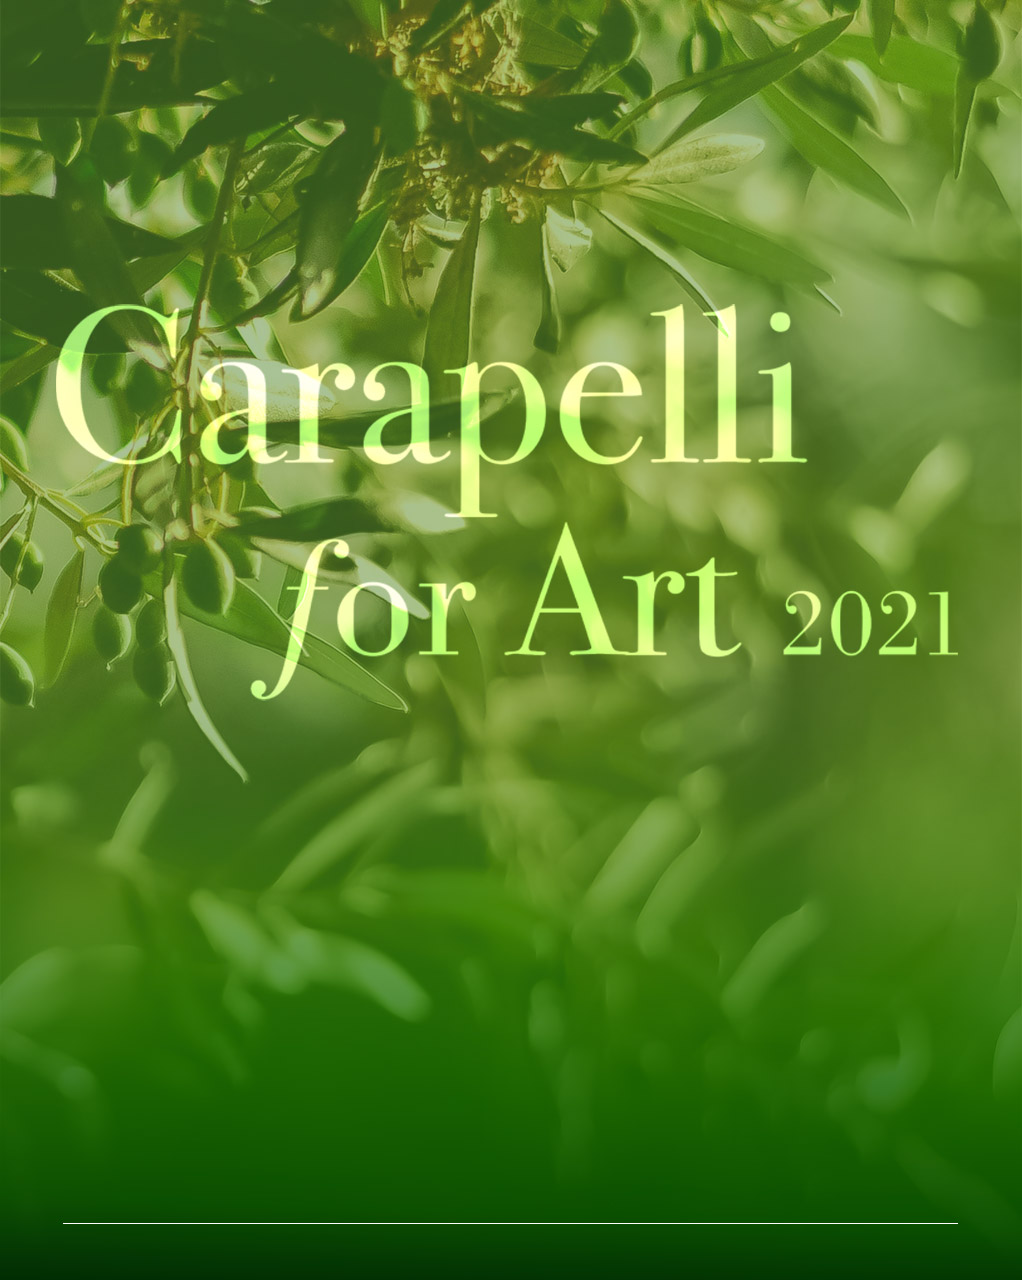 fotografia di un ramo di olivo con il titolo caramelli for art 2021